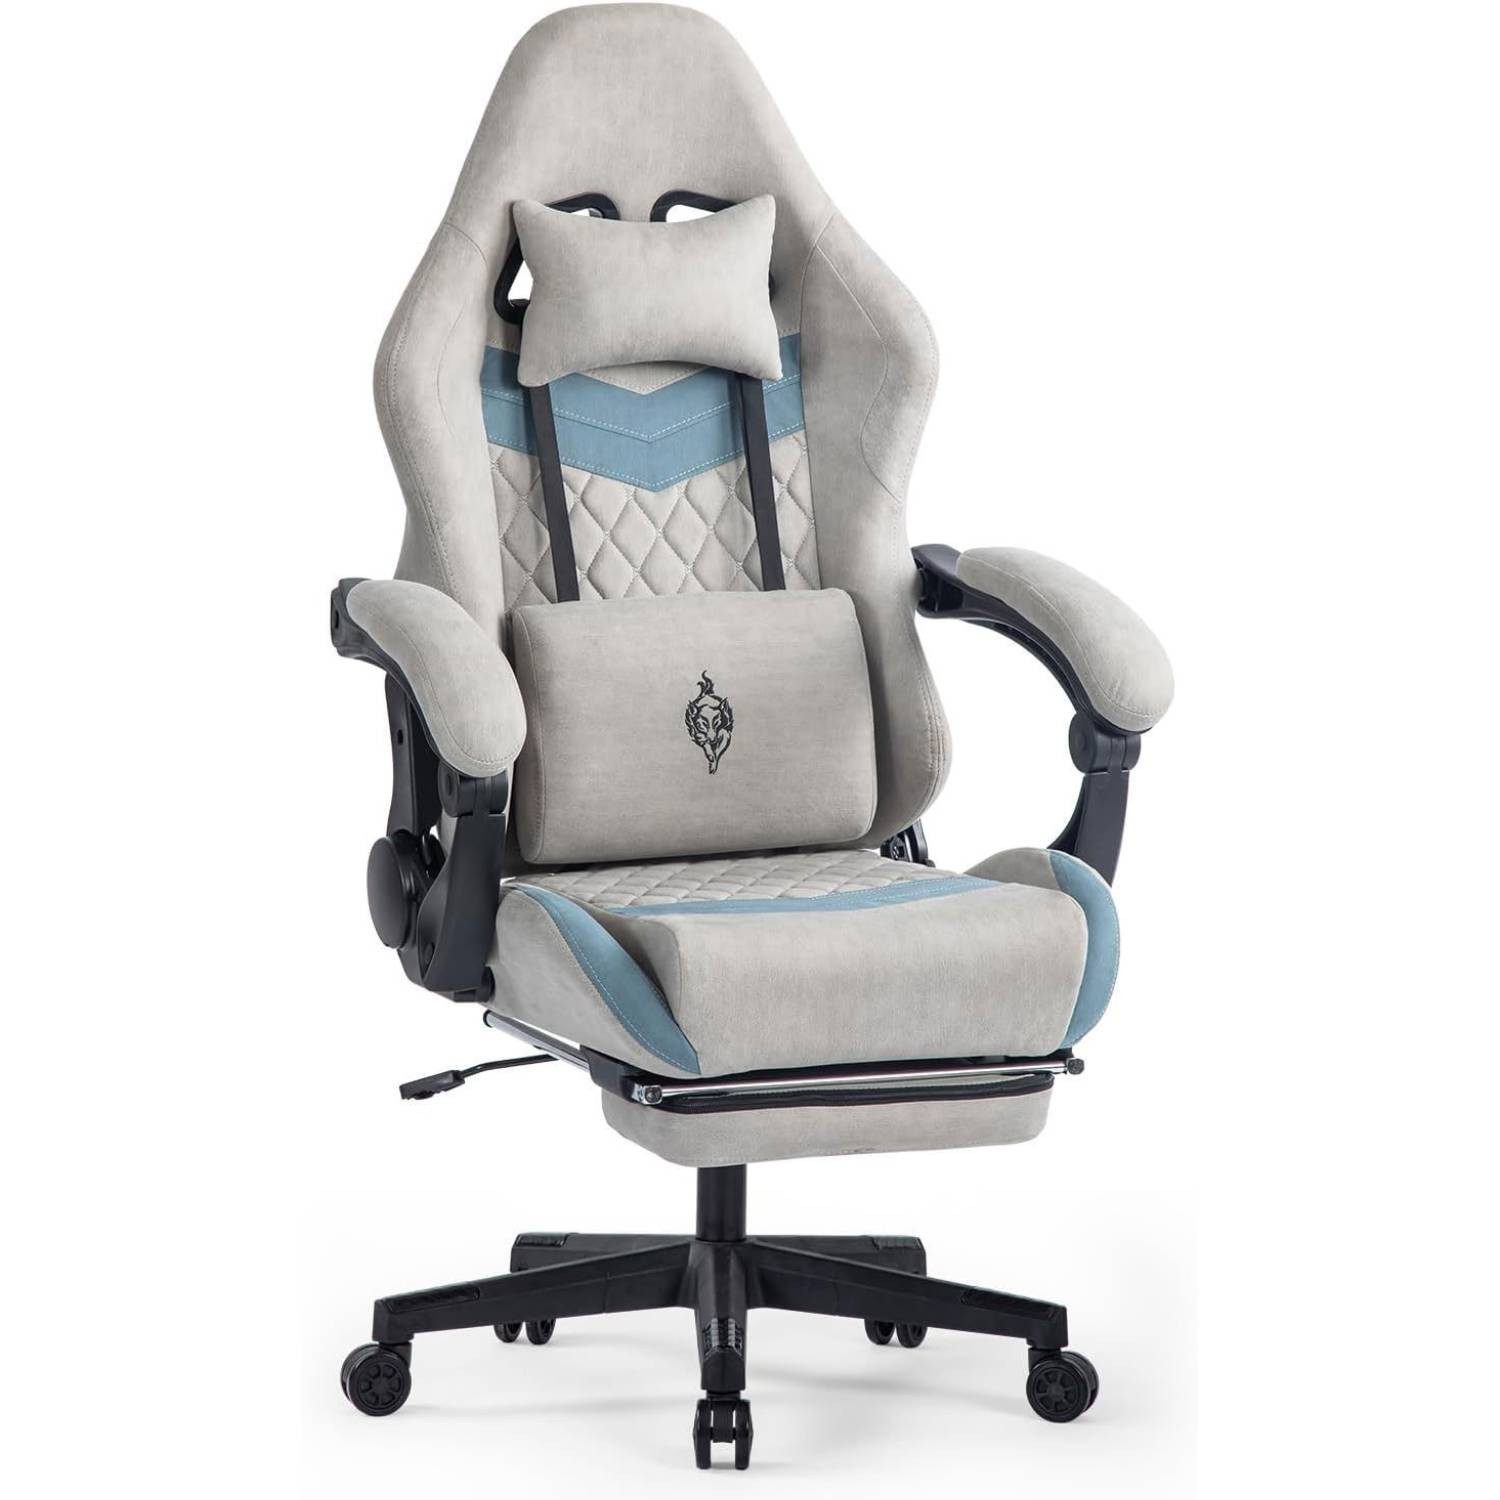 Powerwill Gaming Chair Gaming Chair with Footrest (Ergonomischer Gaming Sessel mit Lendenwirbelstütze), 150 kg Belastbarkeit Gamer Stuhl